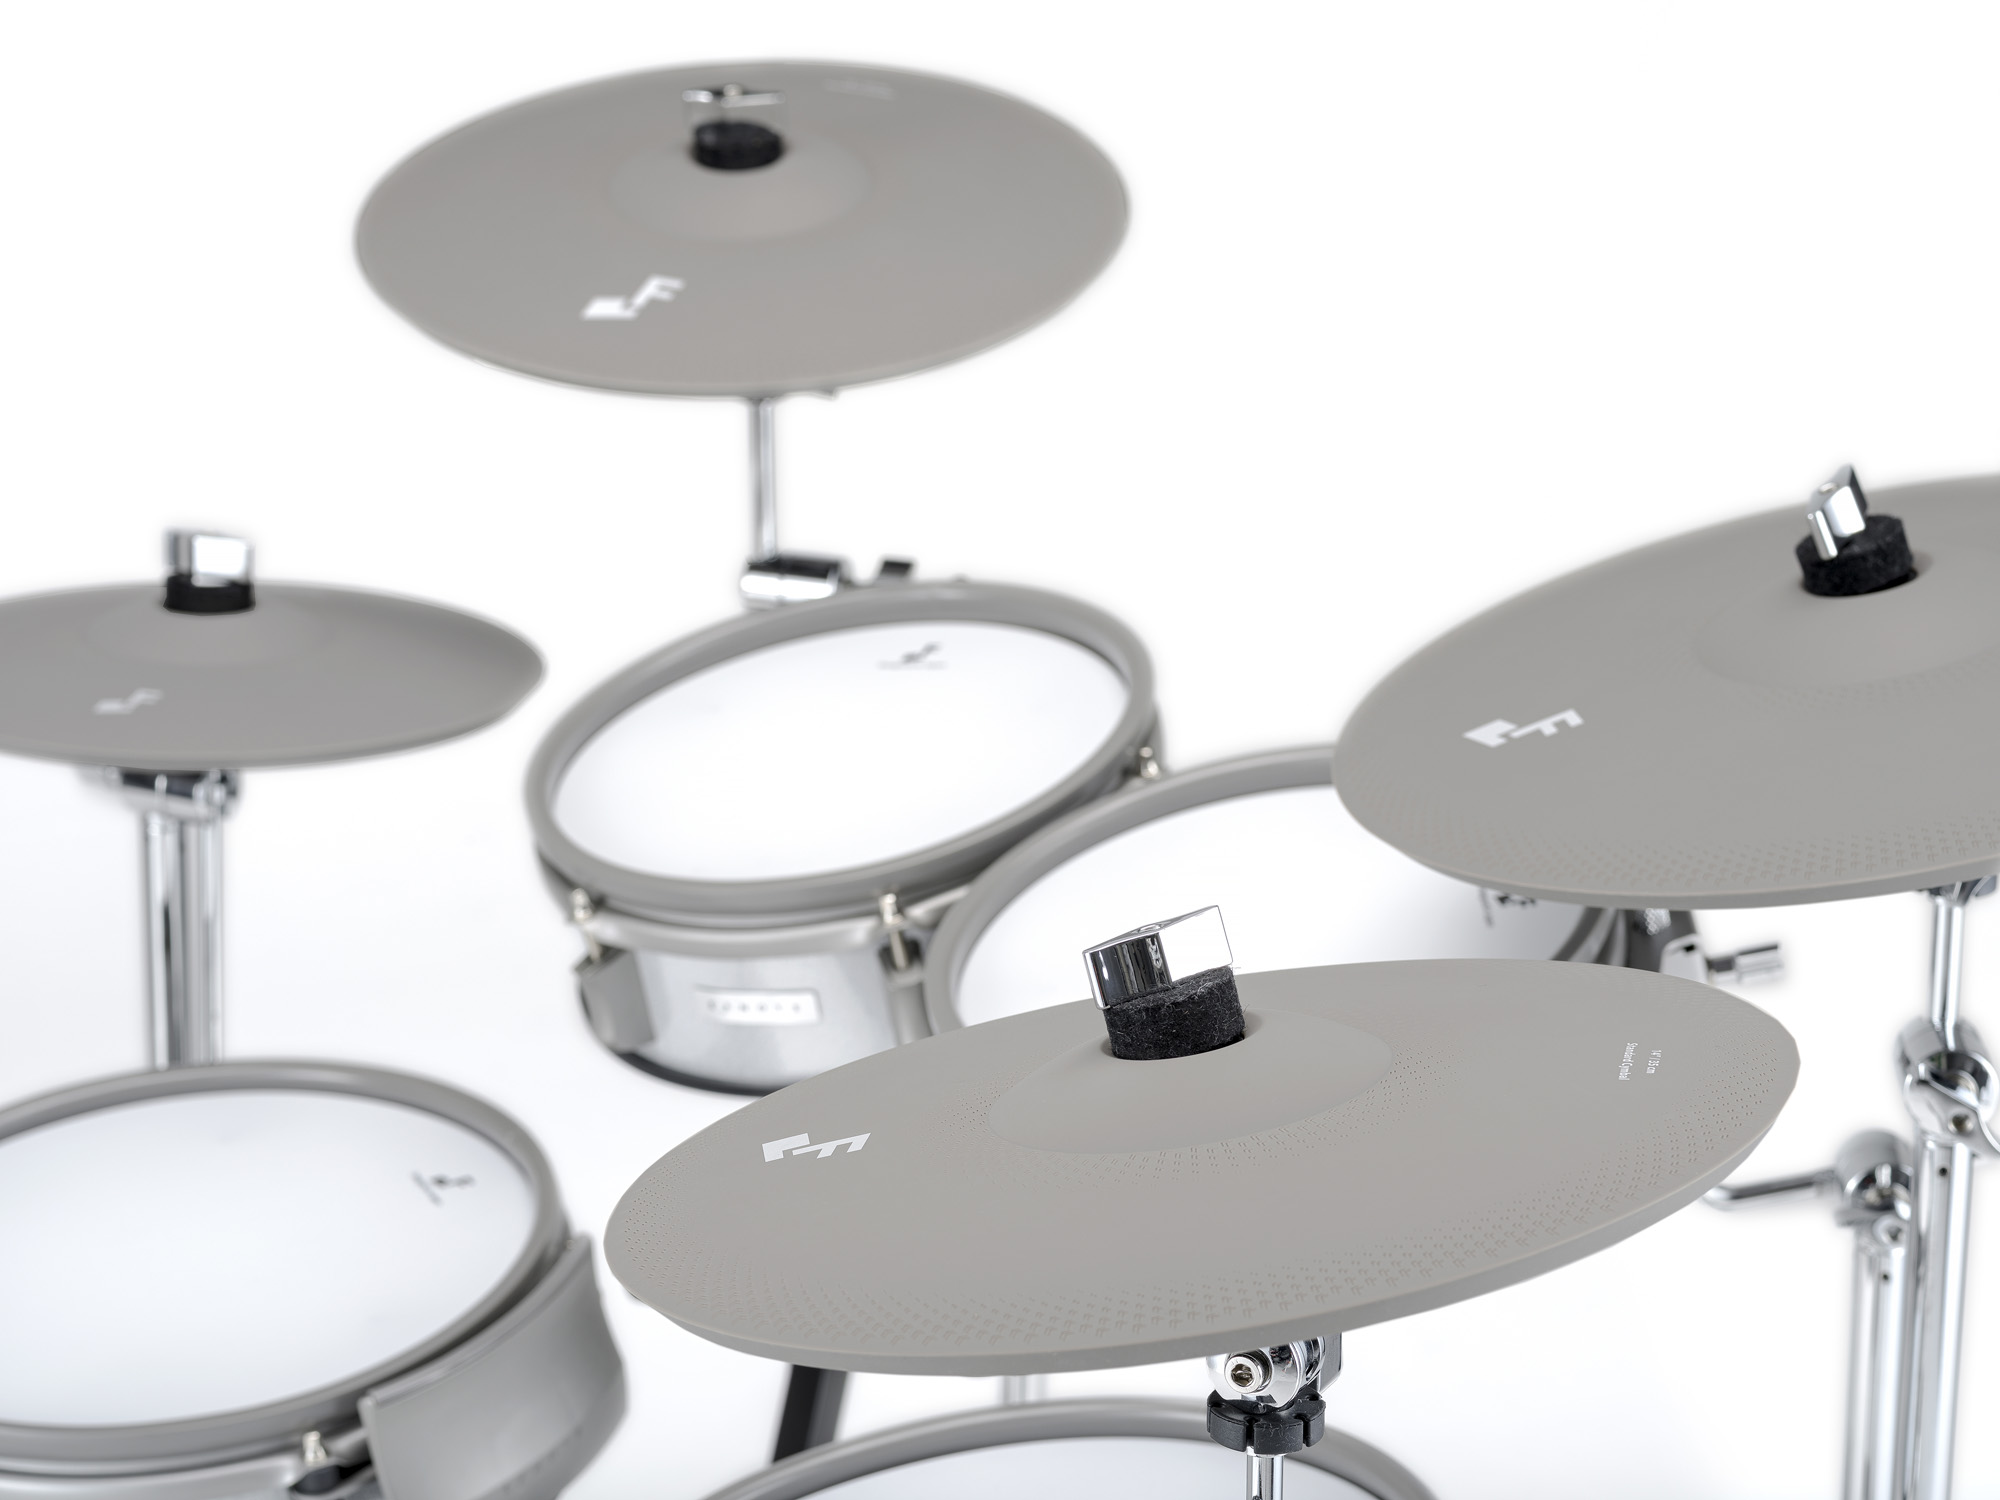 Efnote Efd3 Drum Kit - Batería electrónica completa - Variation 1